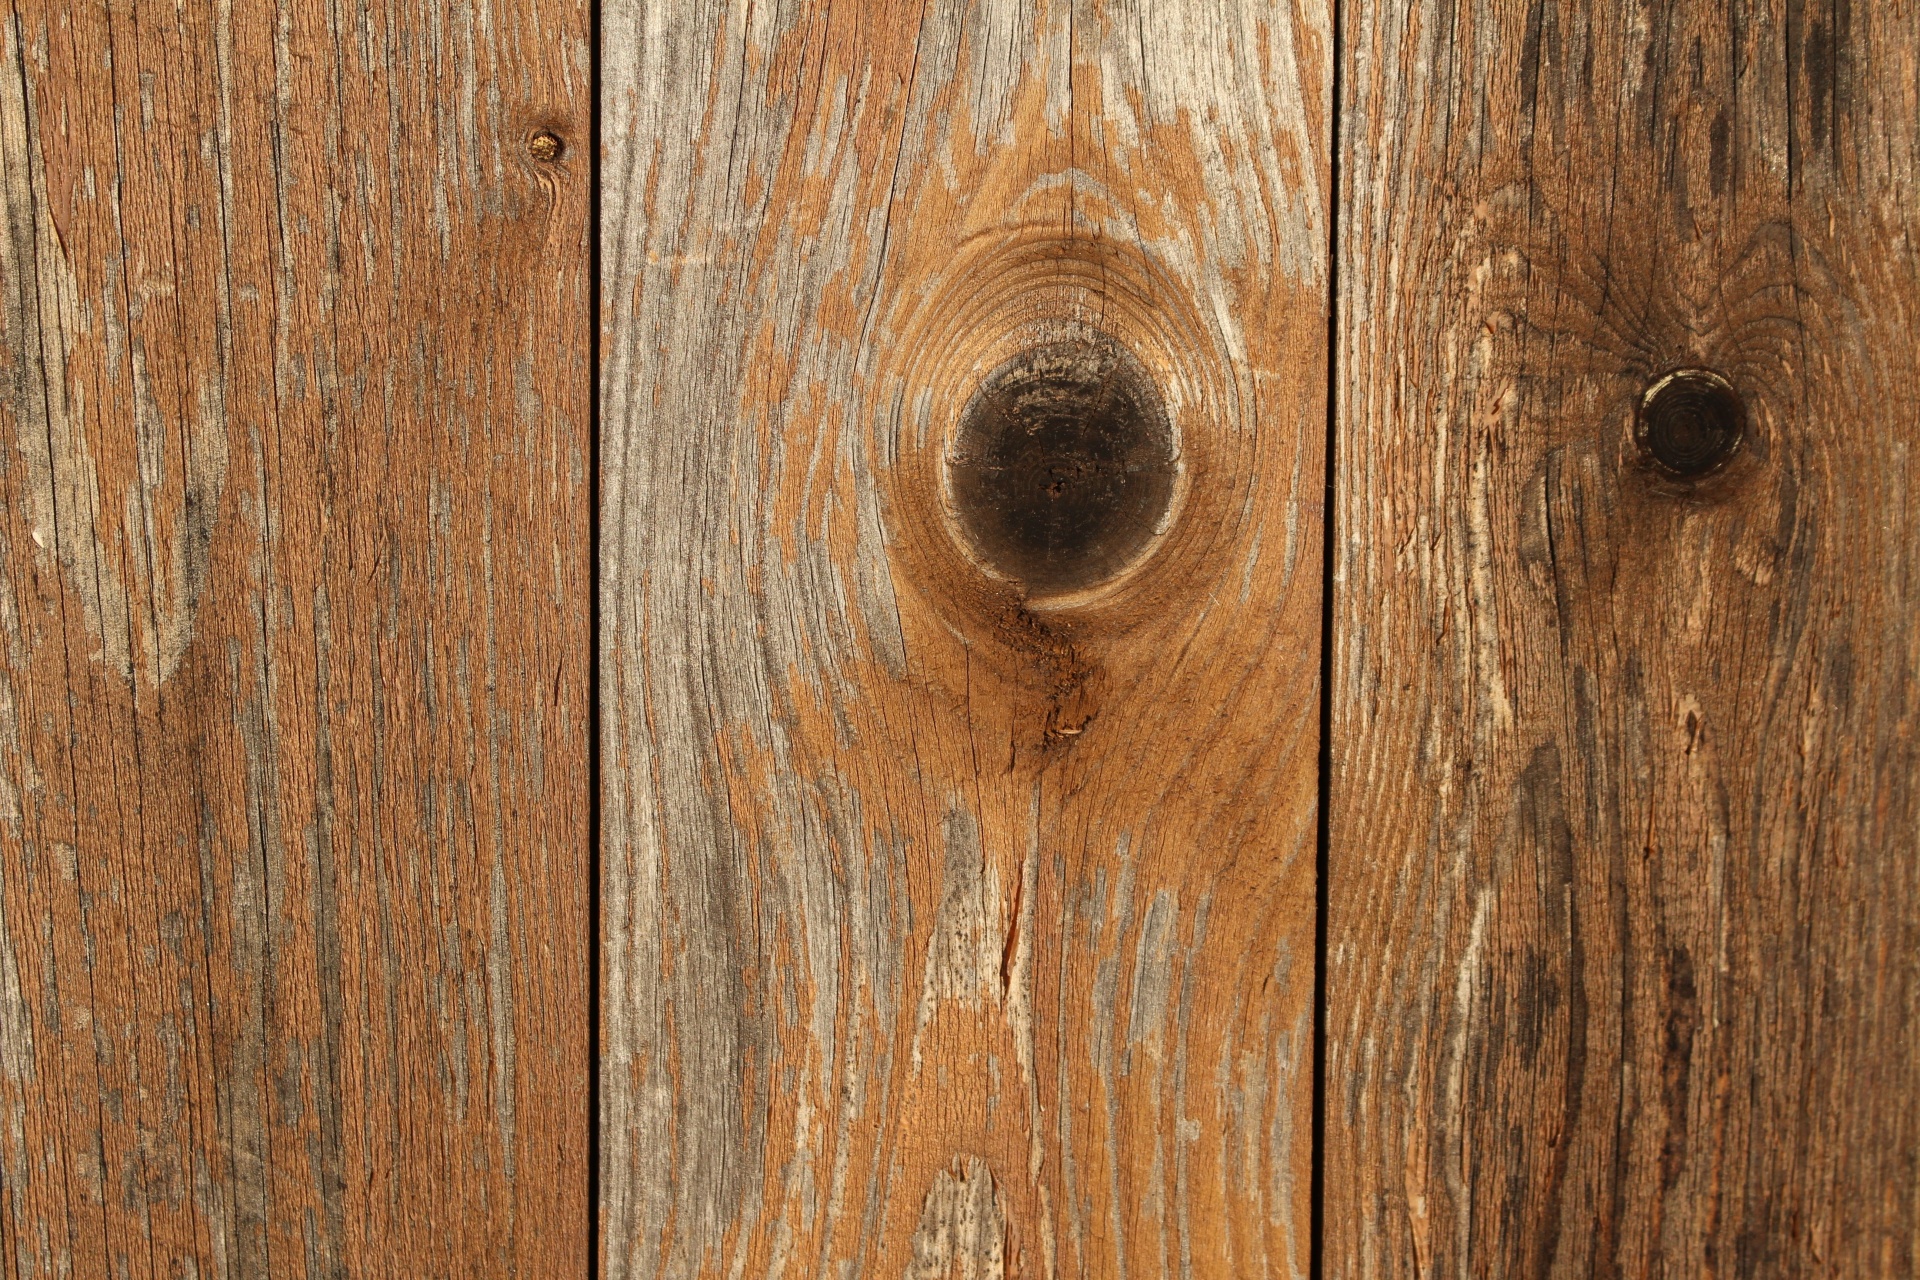 Fundo, velha textura de madeira